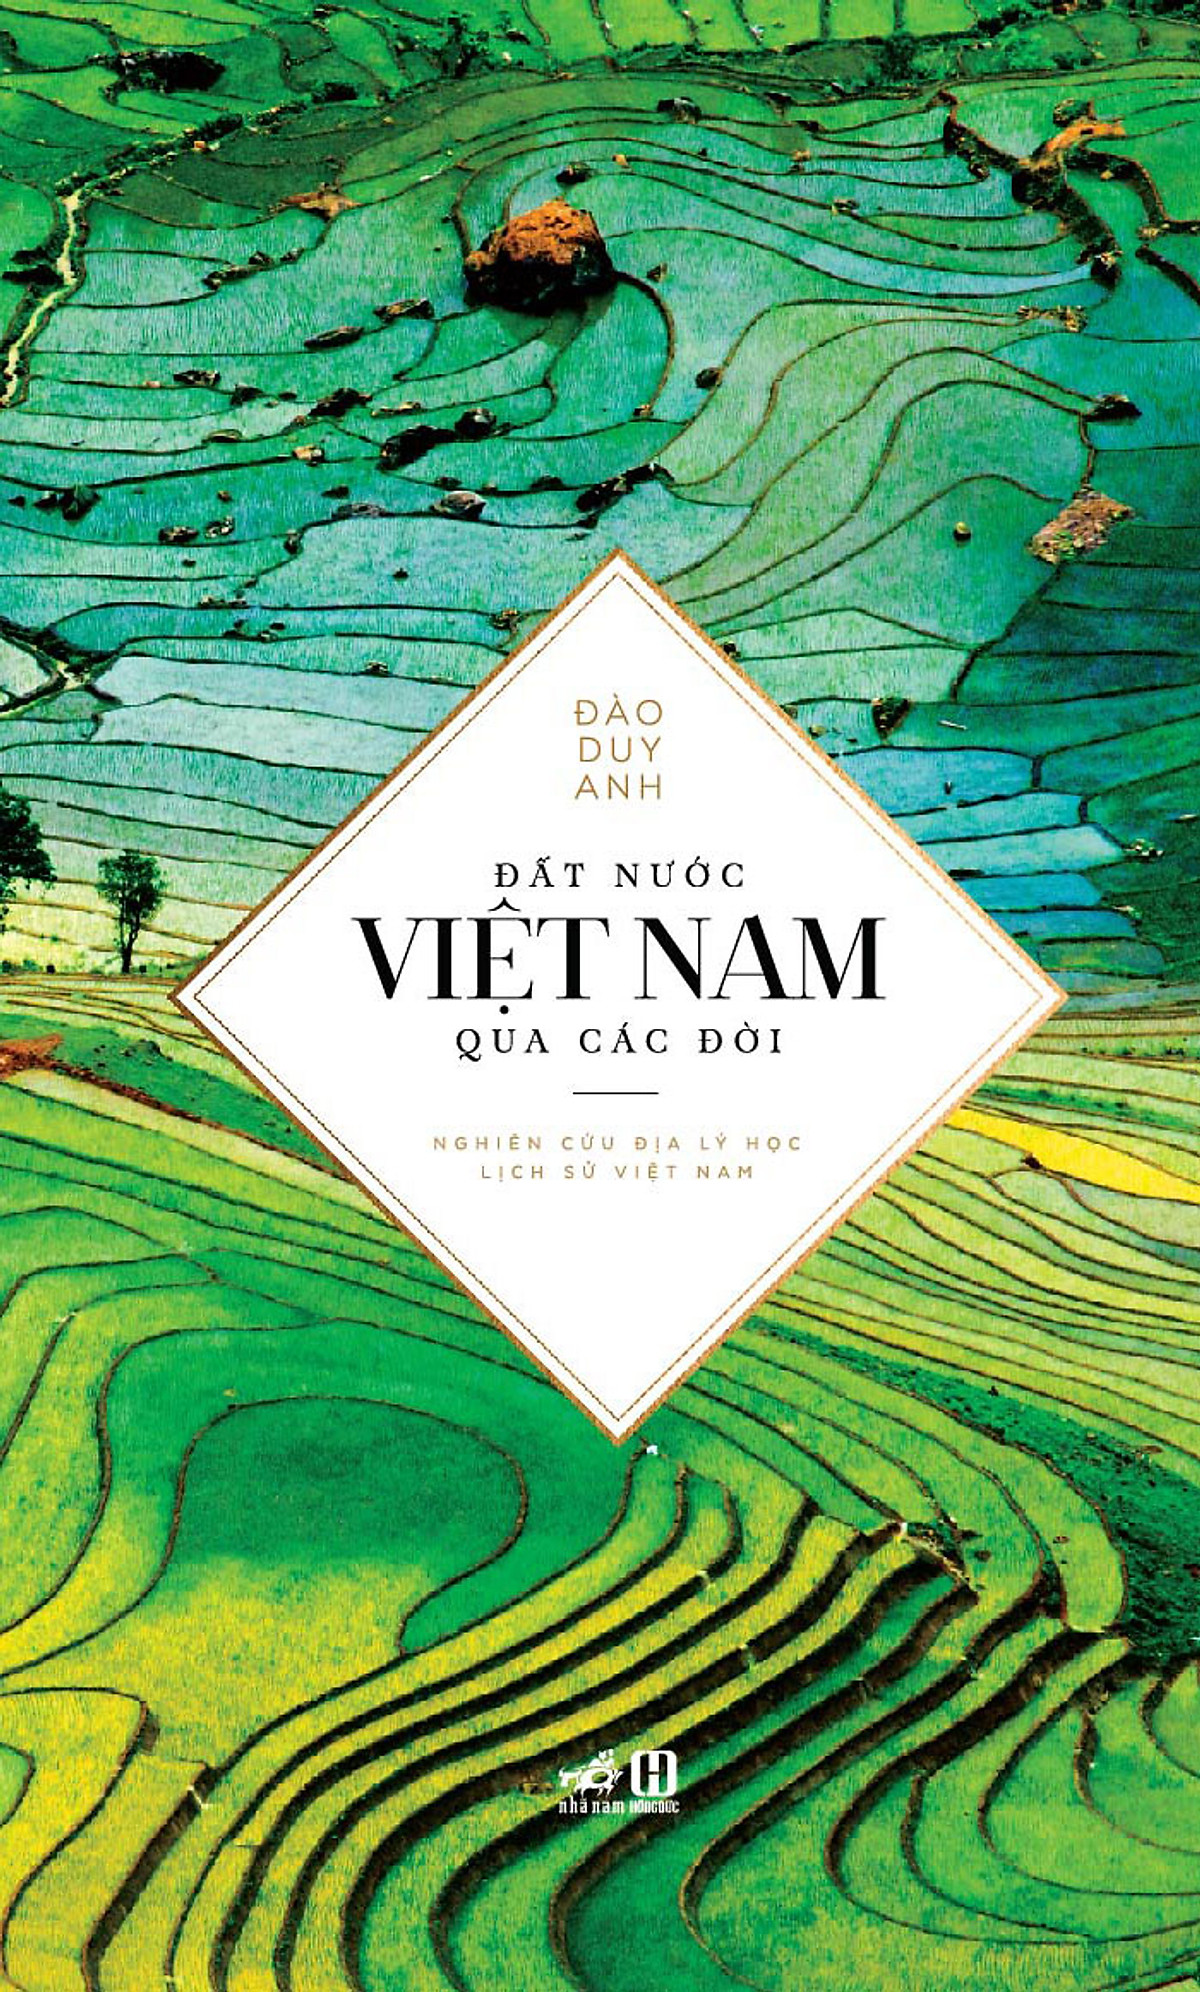 Combo 2 cuốn sách: Một chiến dịch ở Bắc Kỳ  + Đất nước Việt Nam qua các đời